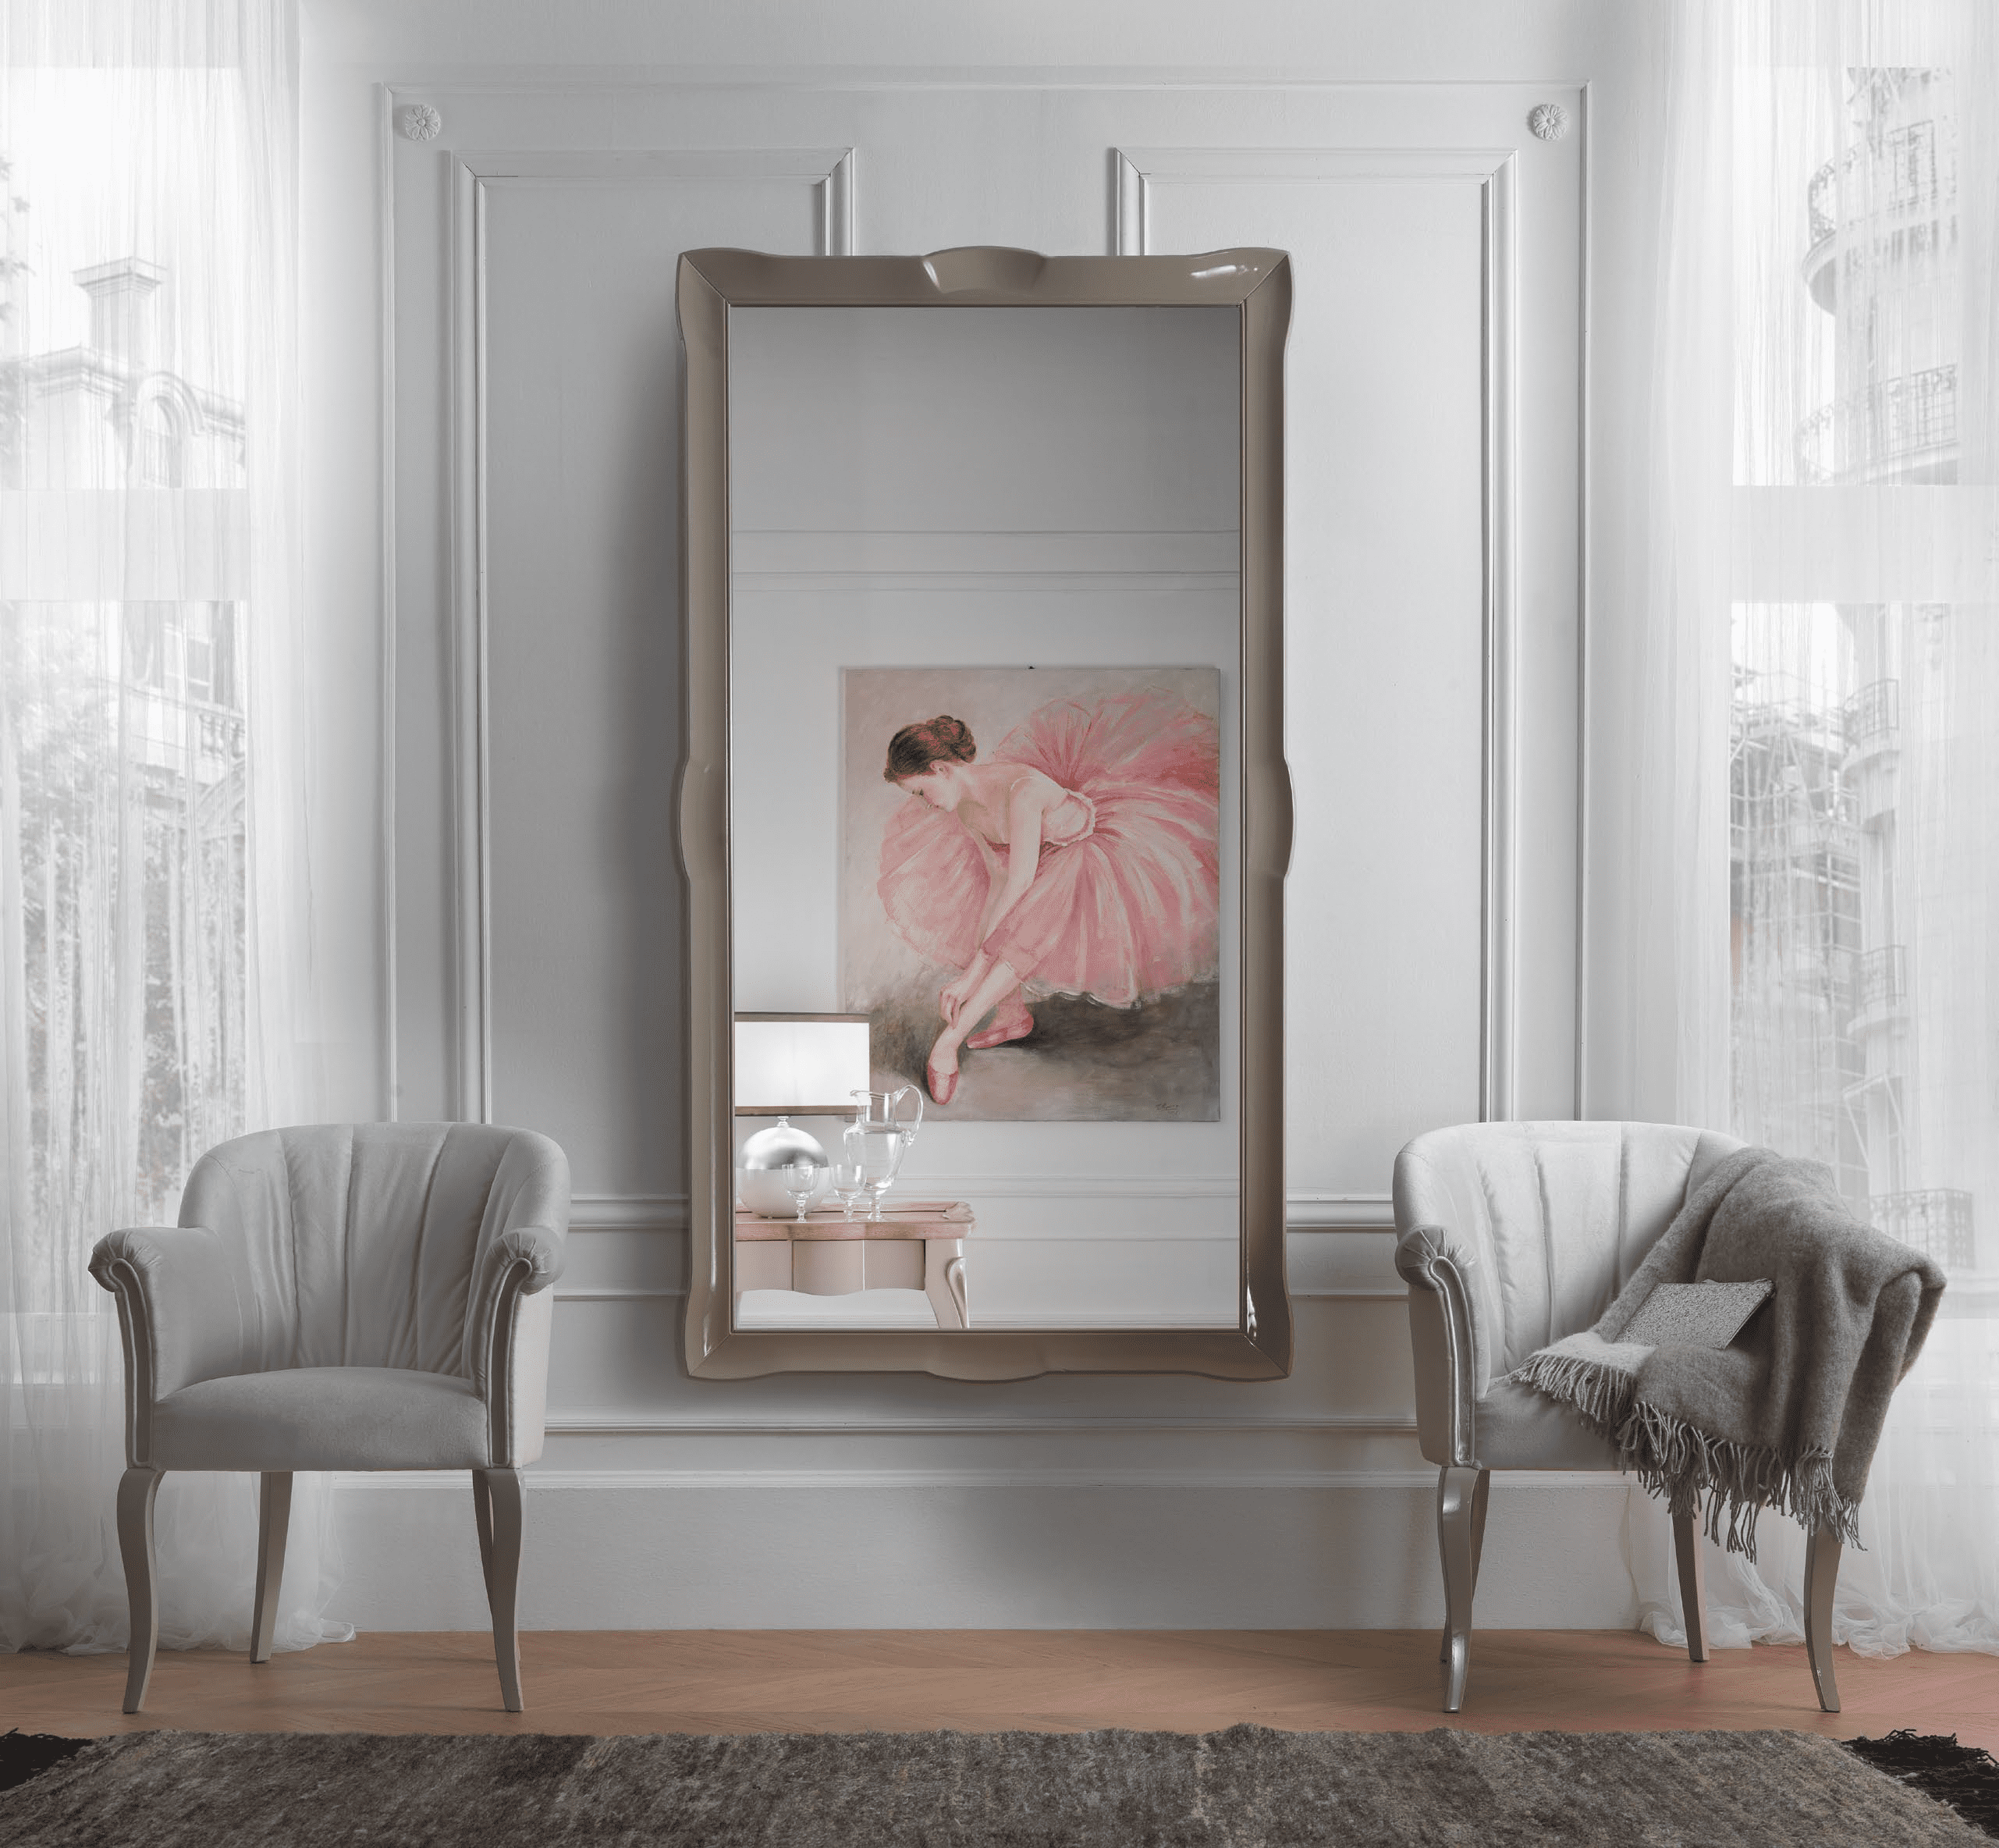 Мебель для спальни из серии  Maison des Fleurs из Италии